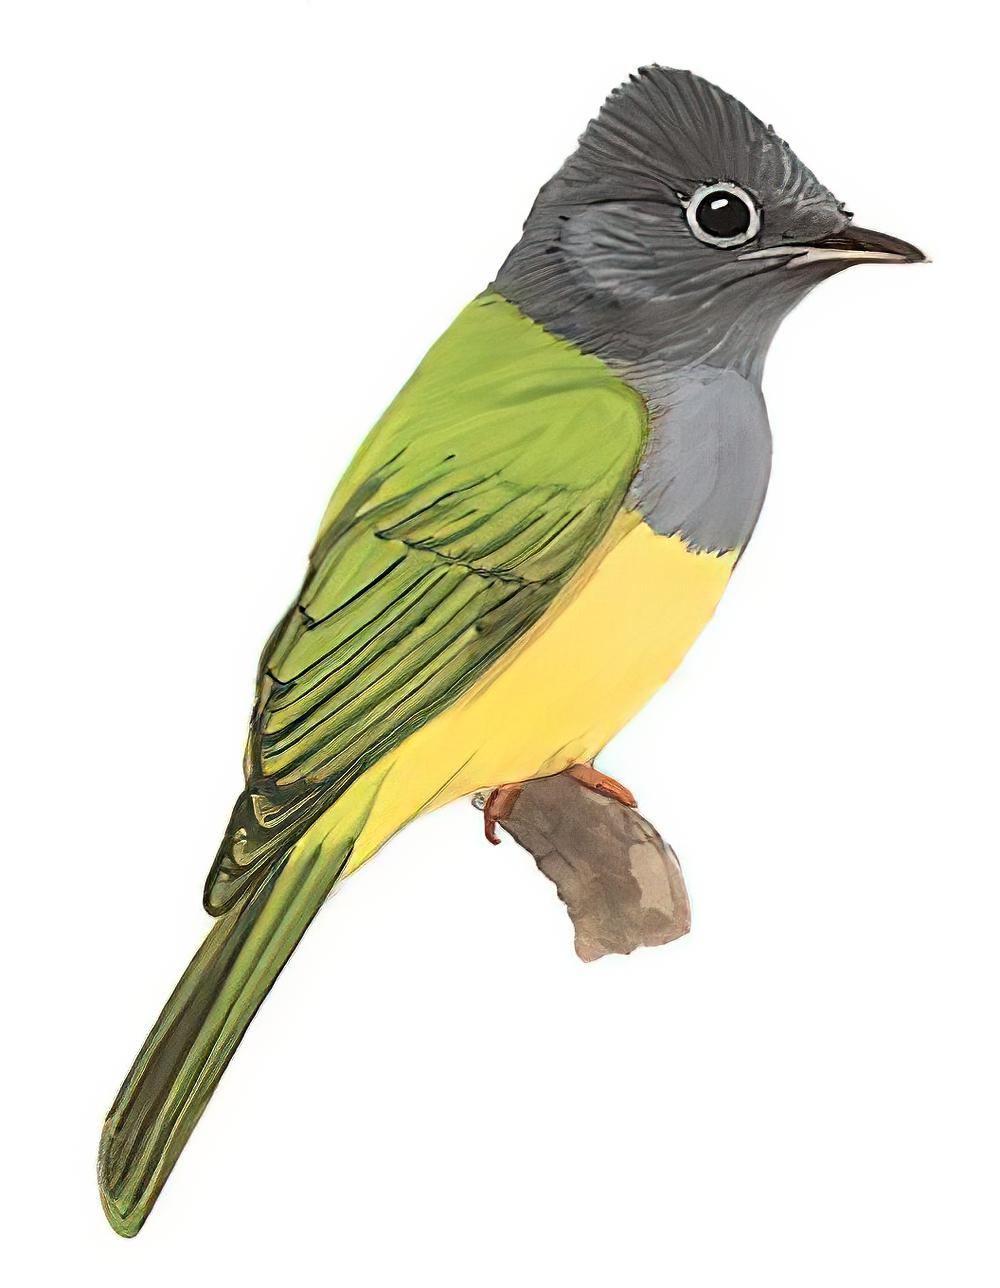 方尾鹟 / Grey-headed Canary-flycatcher / Culicicapa ceylonensis